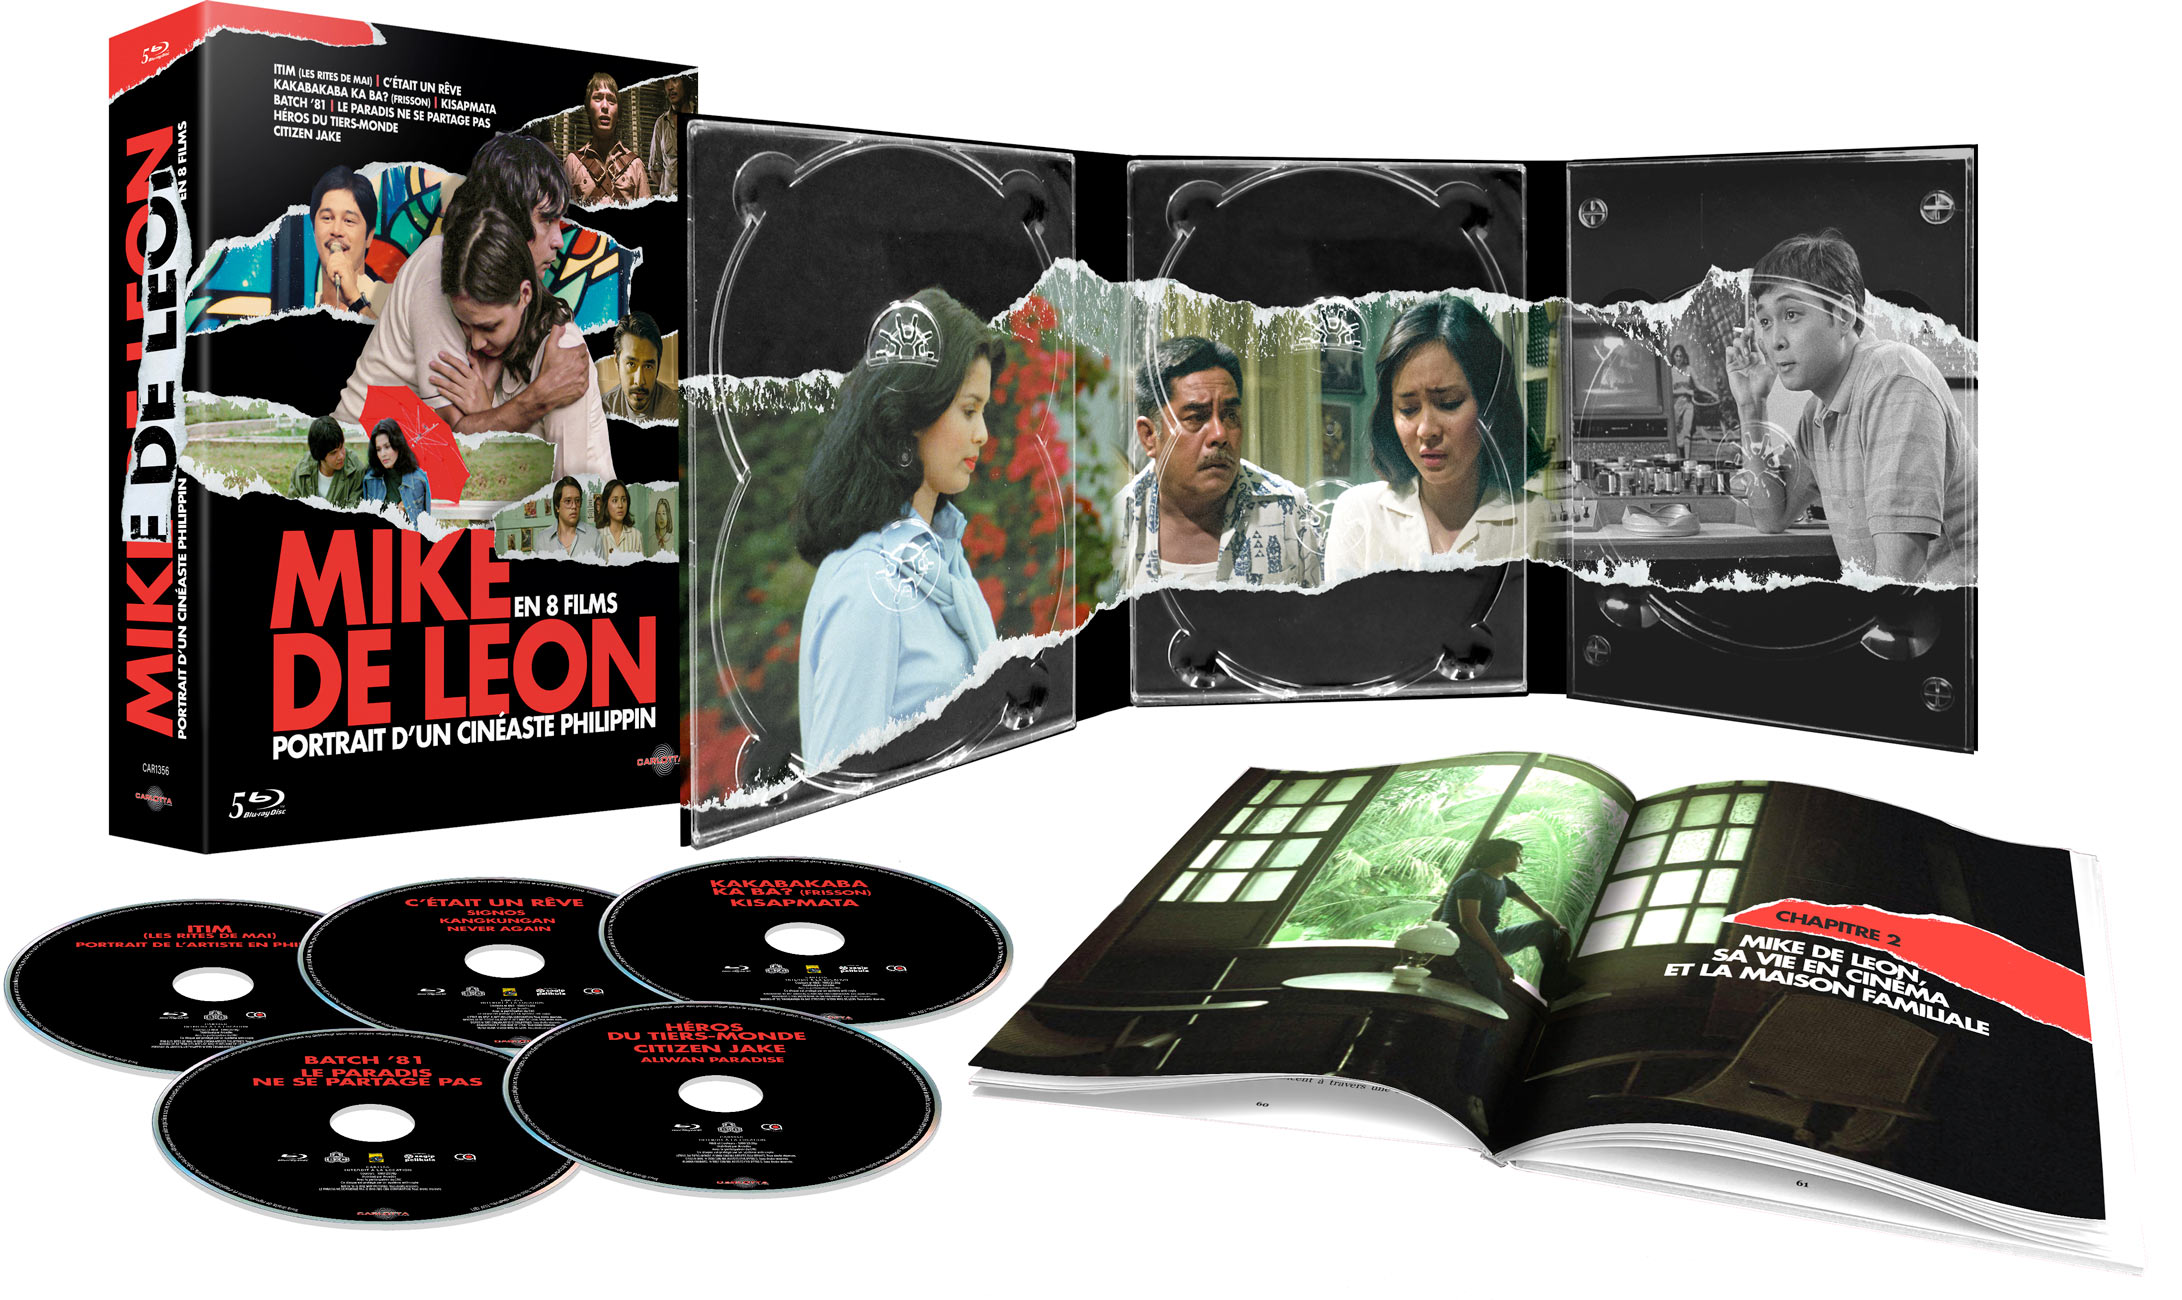 Mike De Leon en 8 films - Portrait d'un cinéaste philippin - 5 Blu-ray